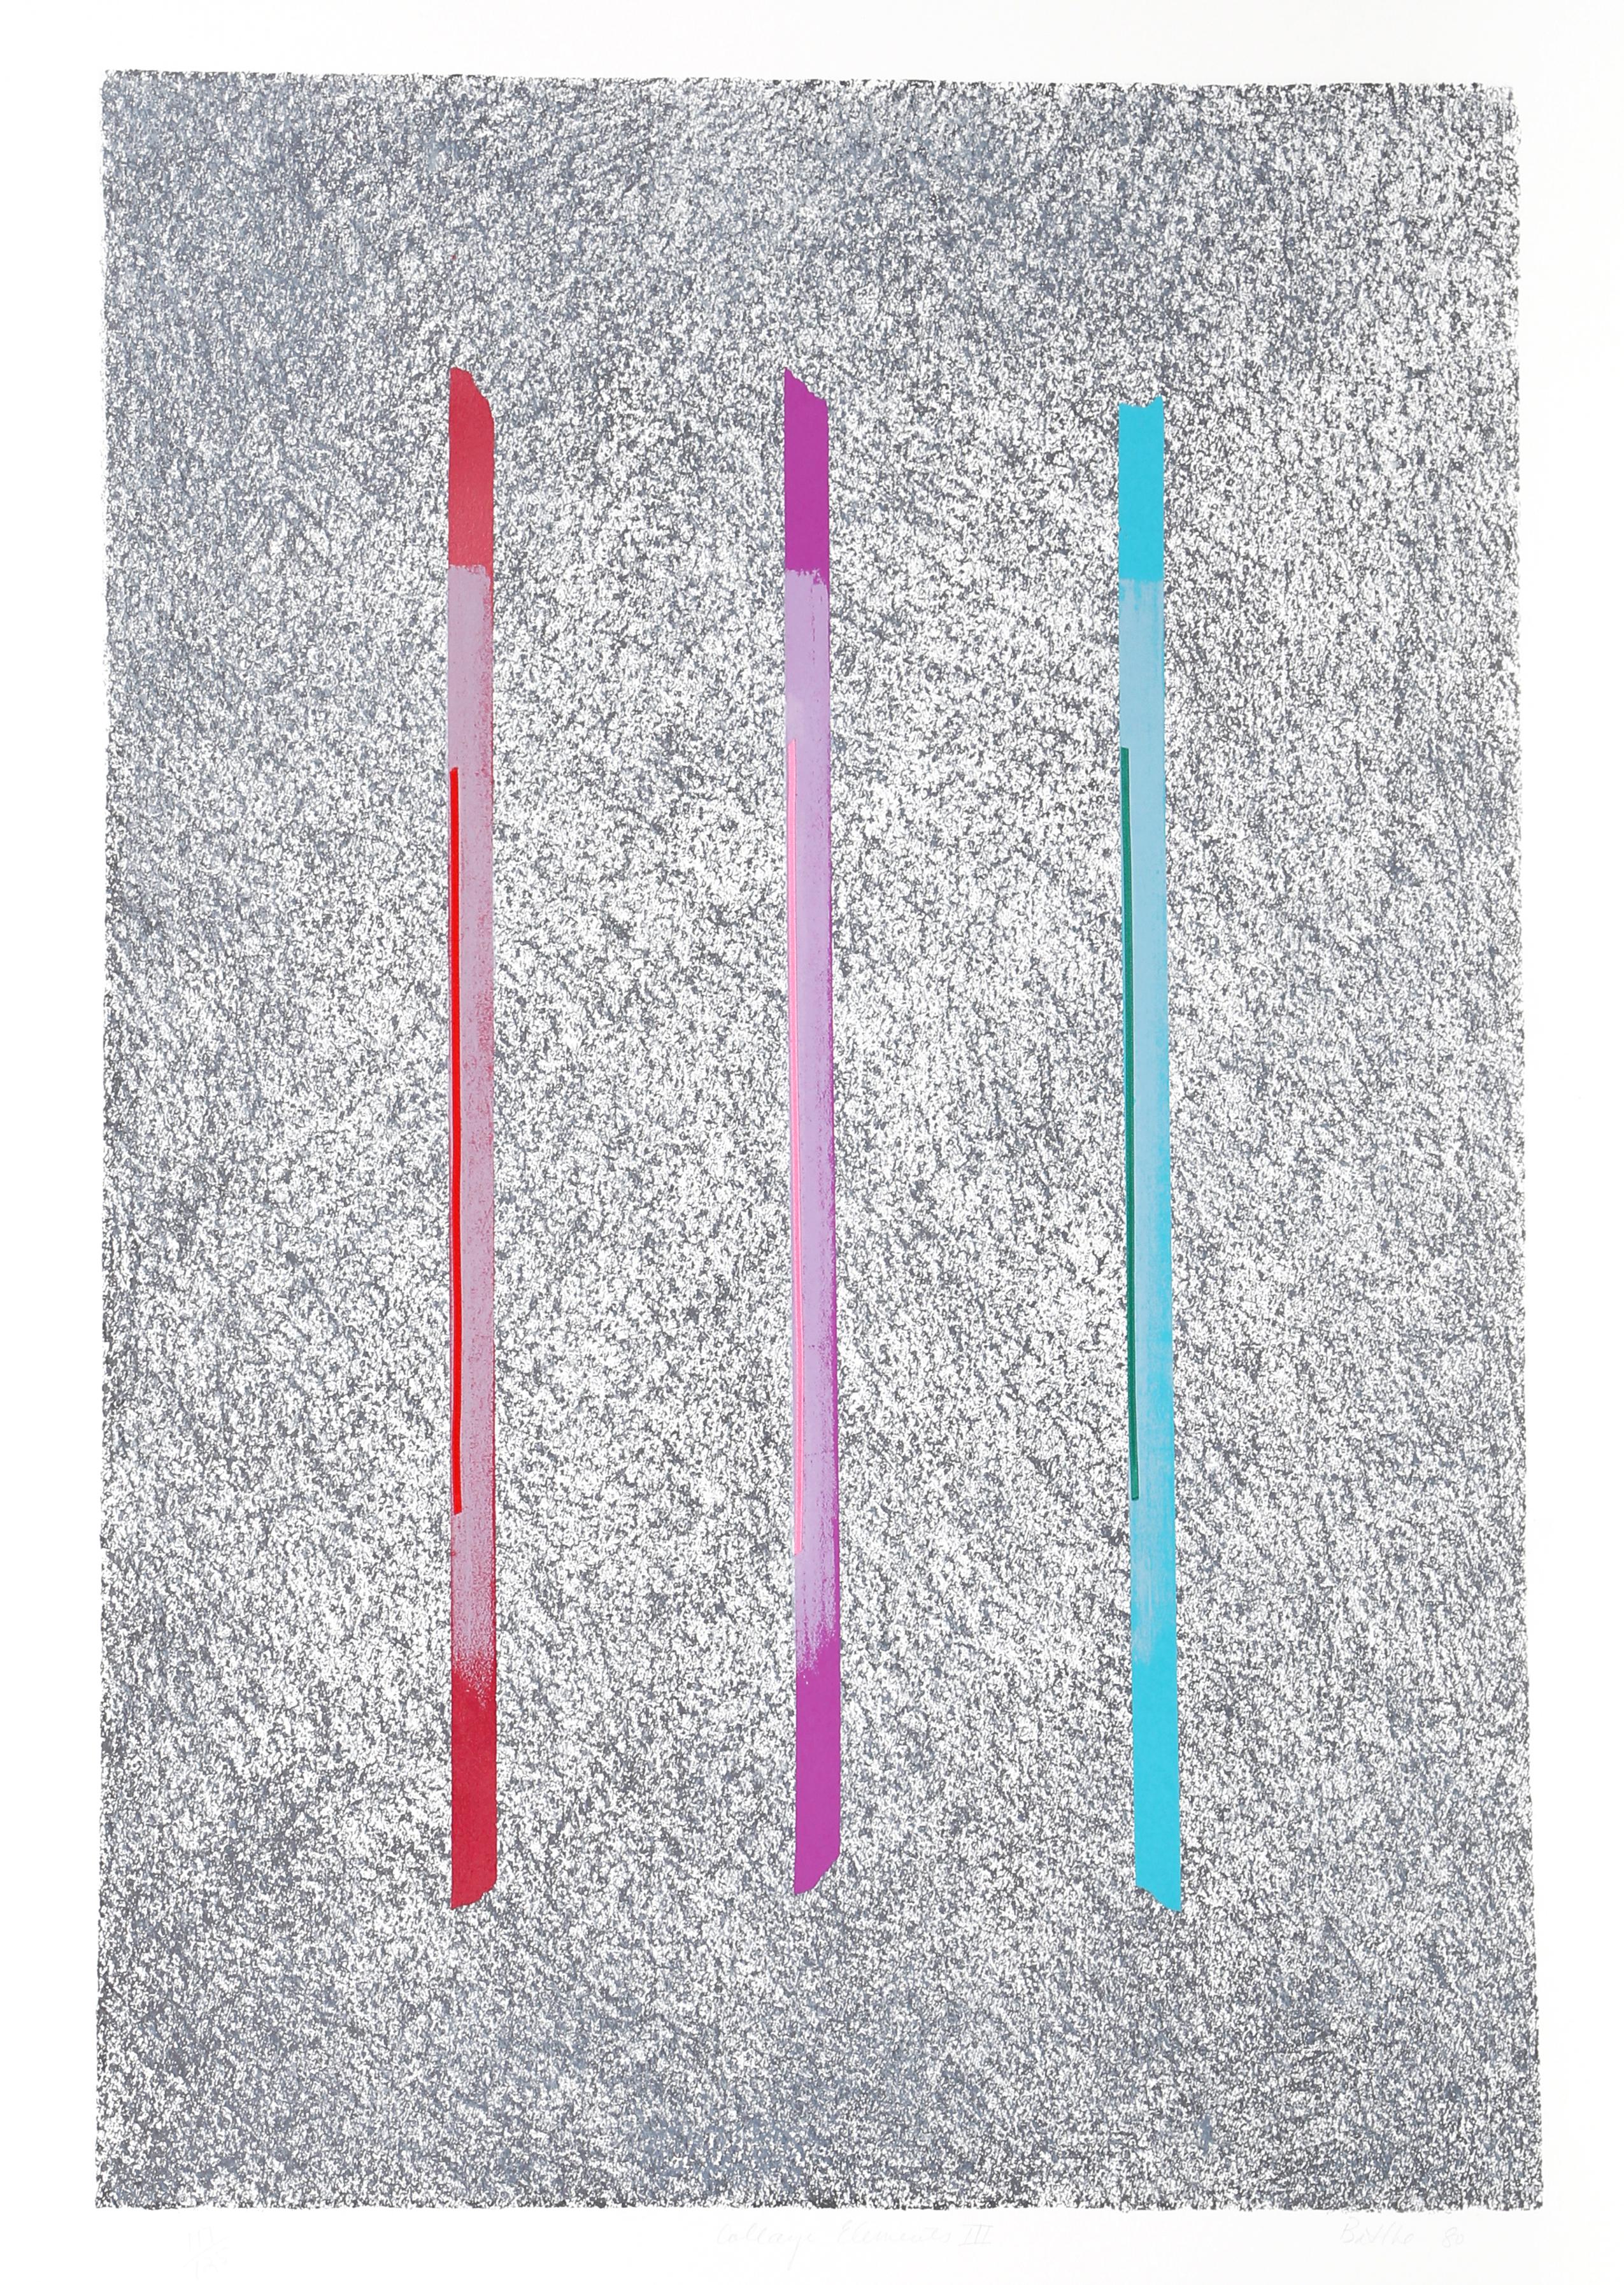 Künstlerin: Georgette Batlle
Titel: Collage-Elemente III
Jahr: 1980
Medium: Siebdruck, signiert und nummeriert mit Bleistift
Auflage: 125
Größe: 44 x 30 Zoll (111,76 x 76,2 cm)